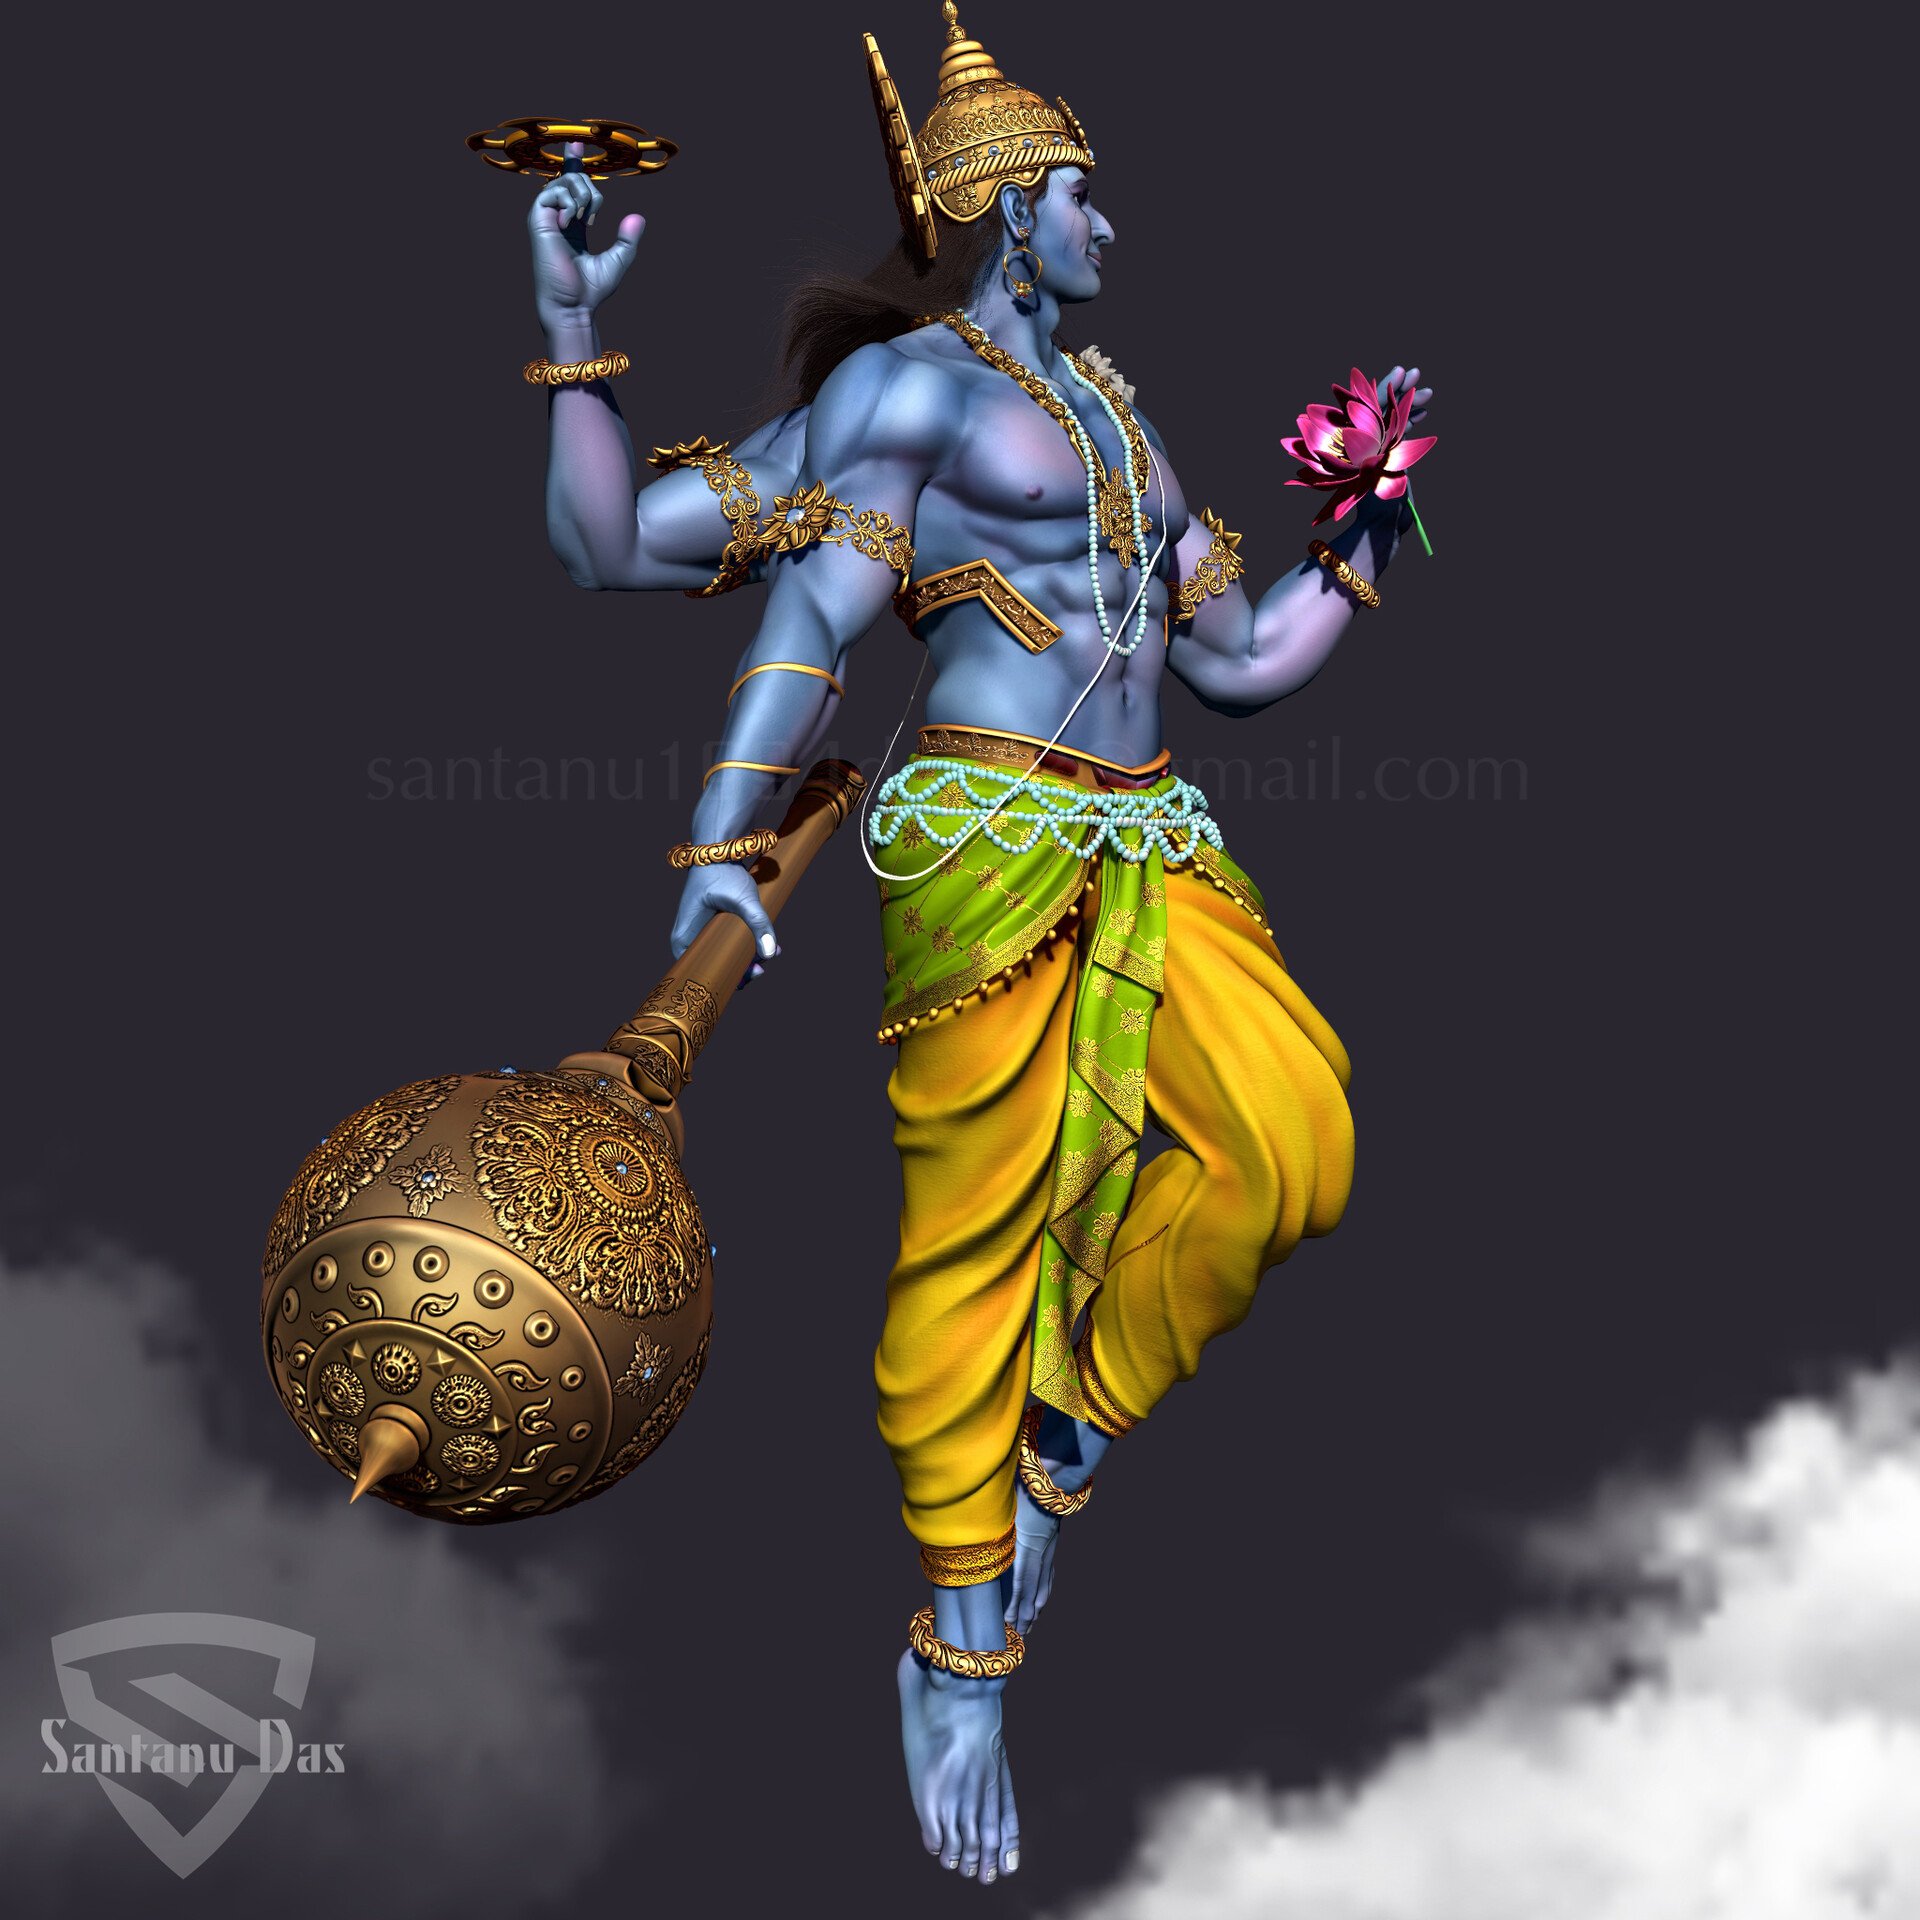 ArtStation - Lord Vishnu by Santanu Das